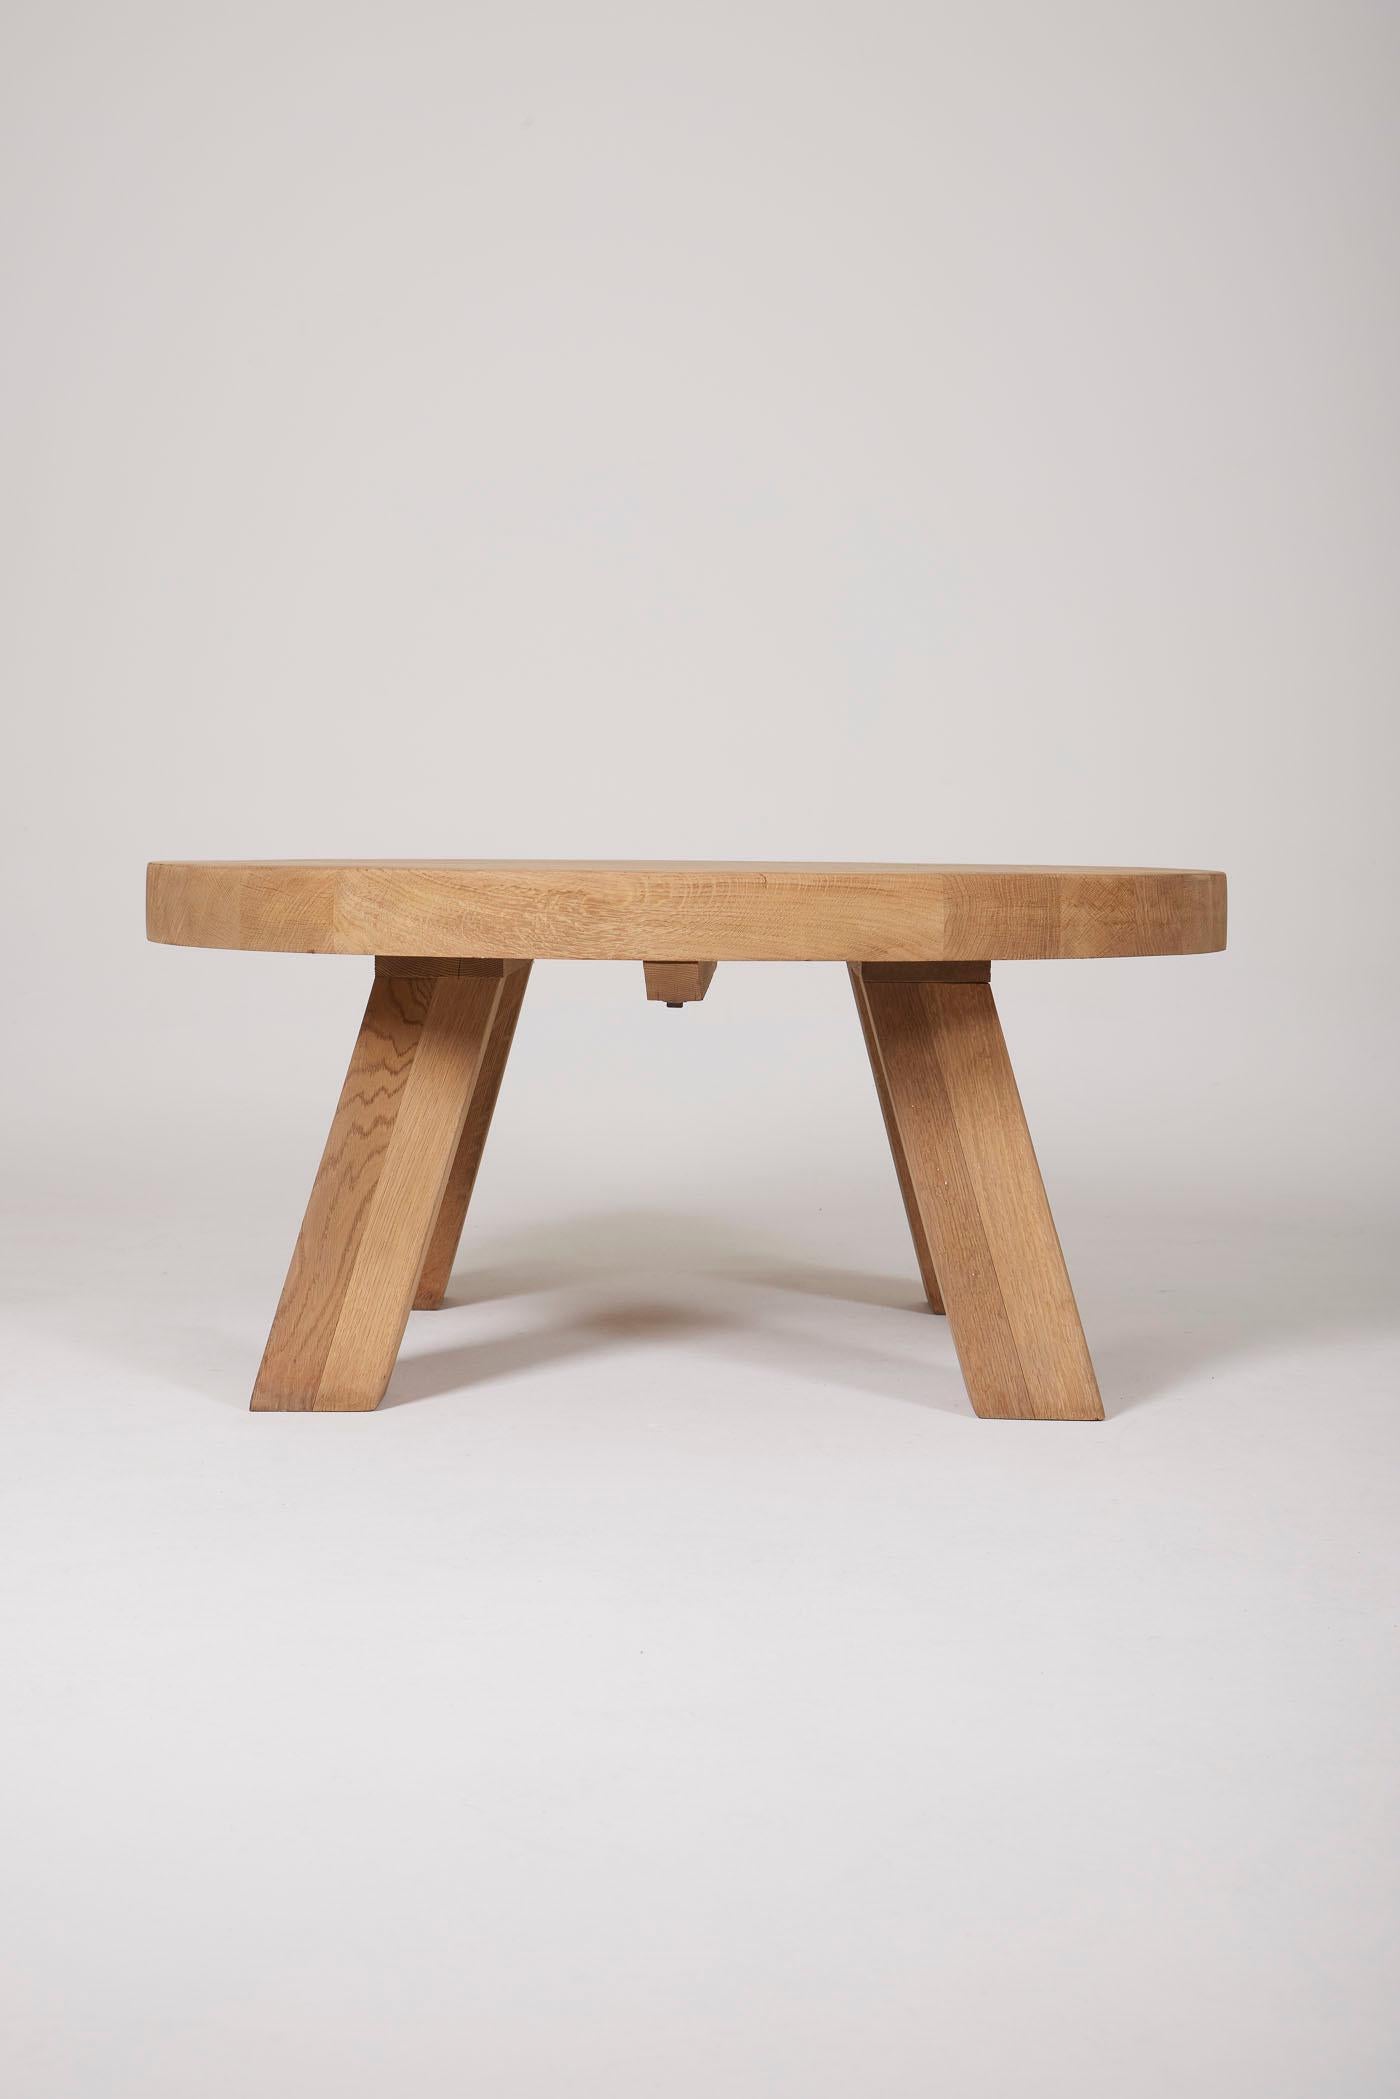 Table basse ronde en bois dans le style de Pierre Chapo. Très bon état.
DV316